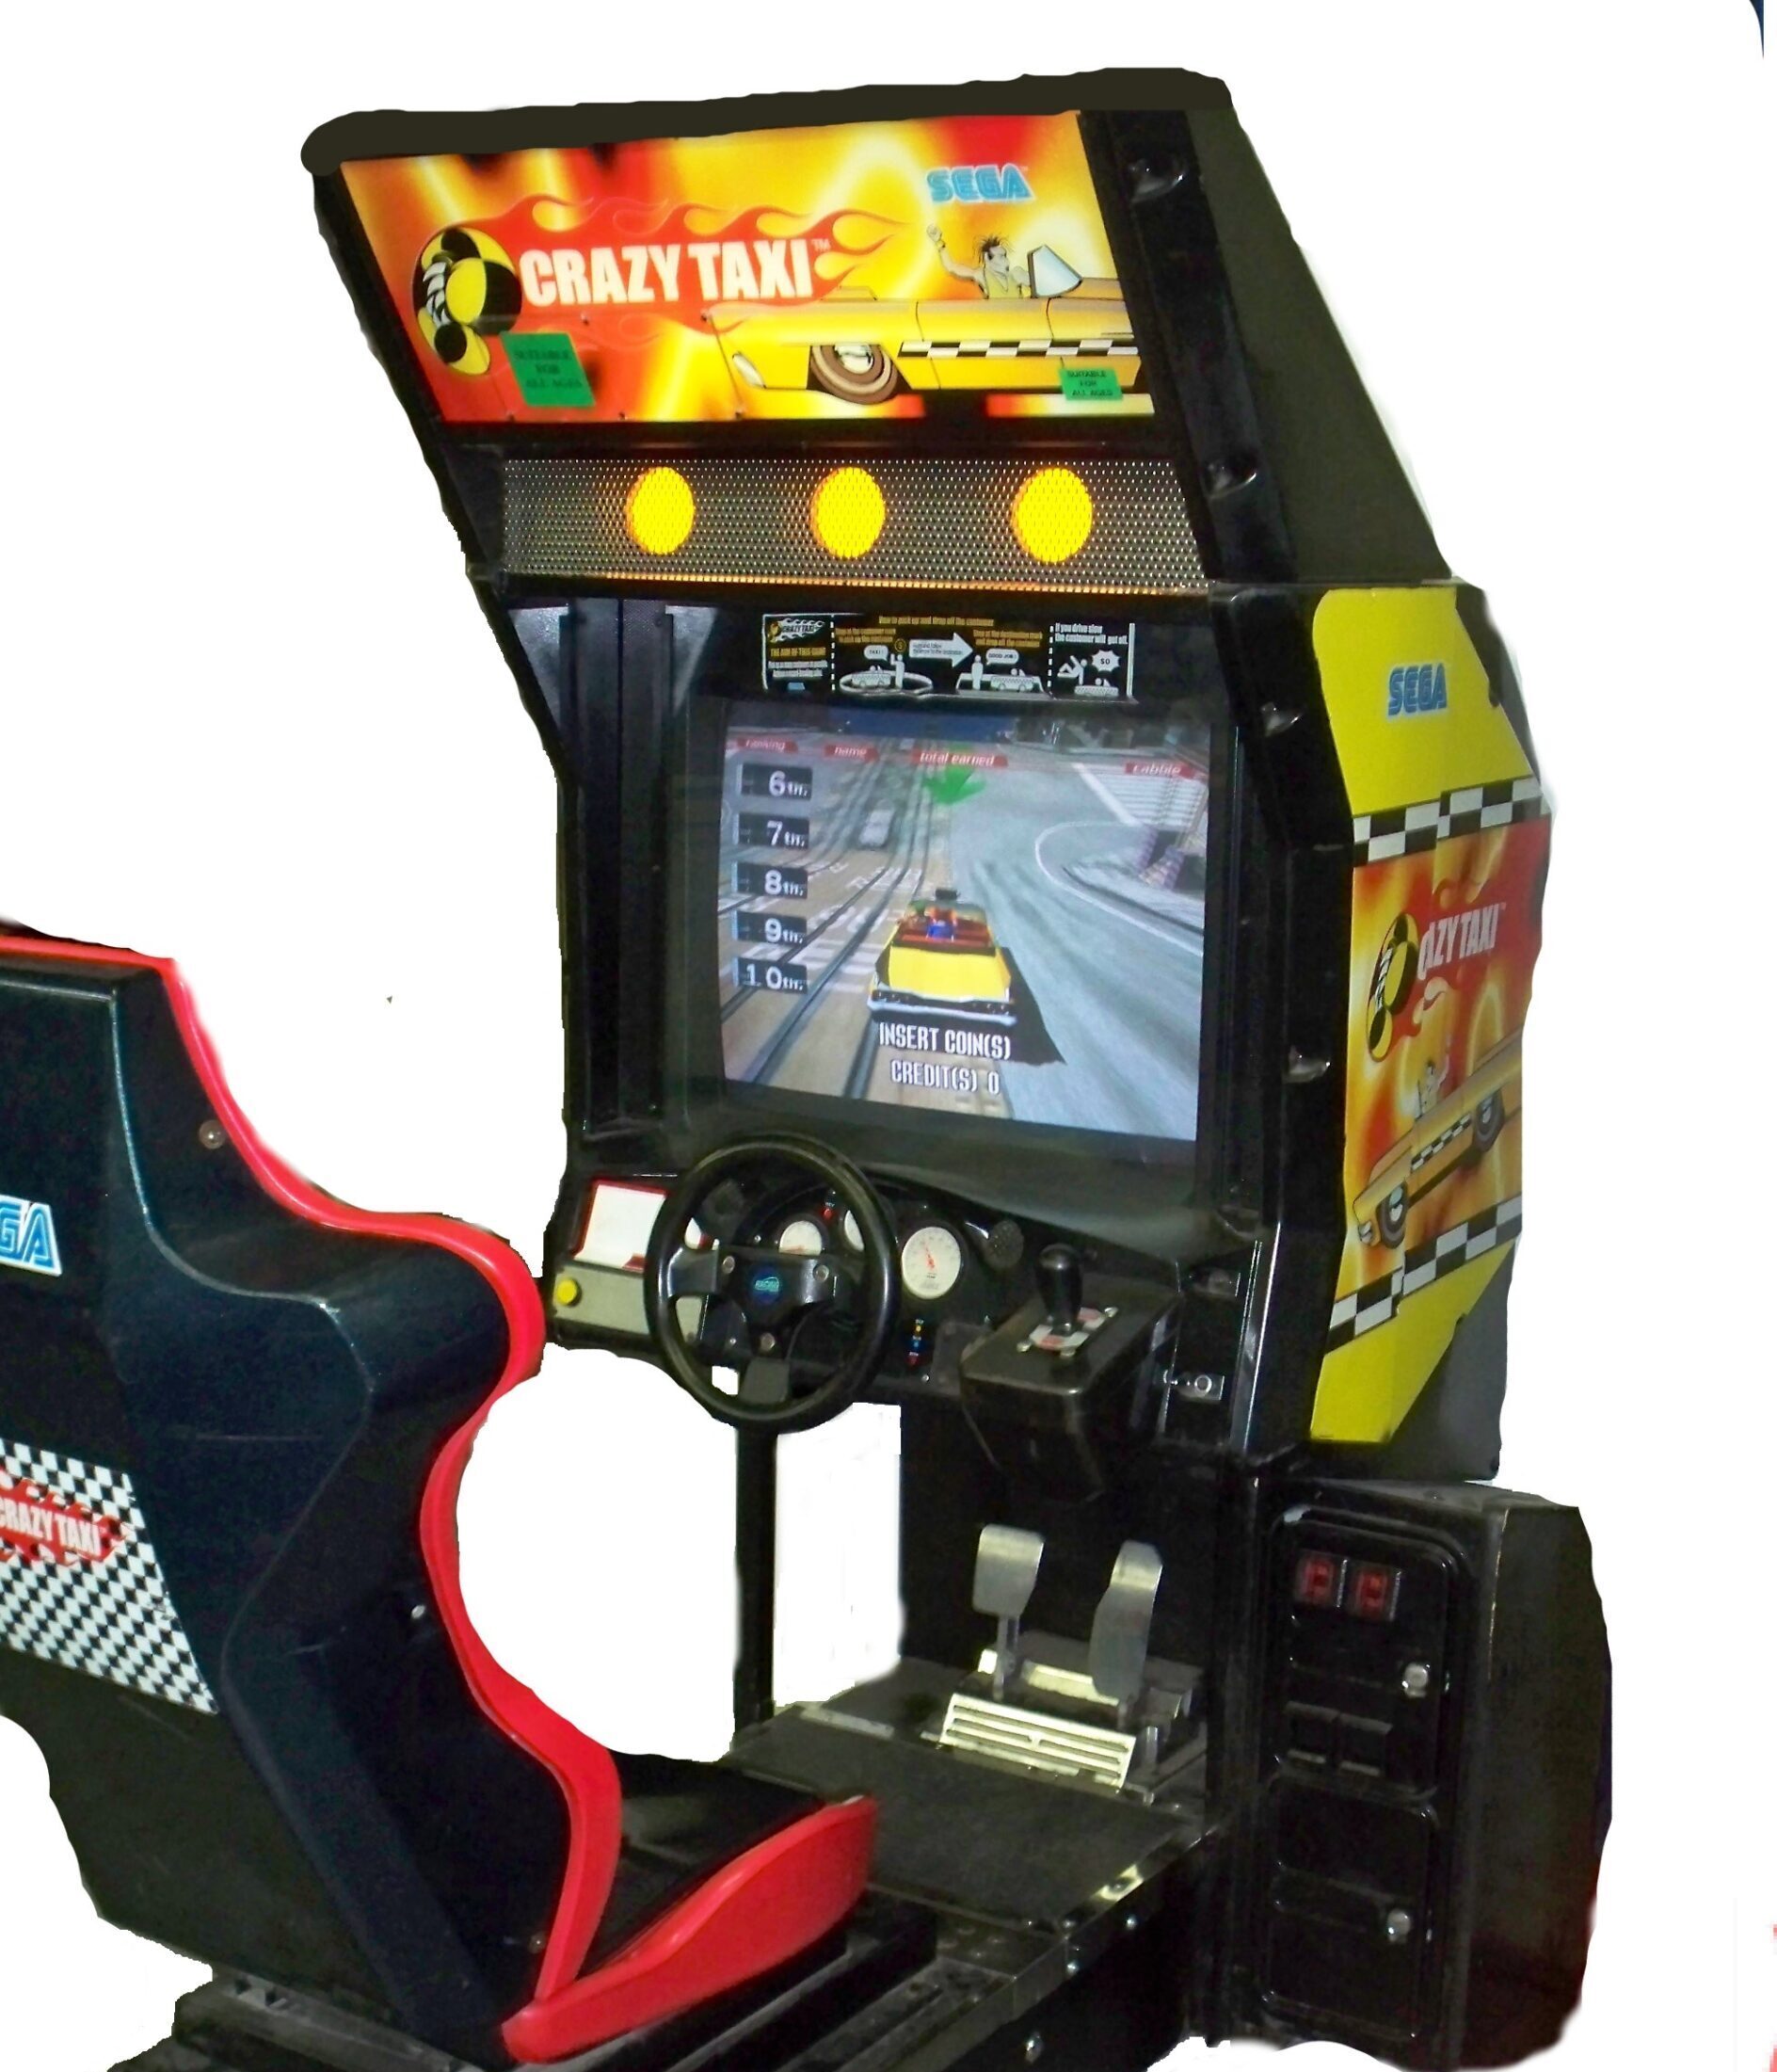 Crazy Taxi Arcade Game  Vintage Arcade Superstore